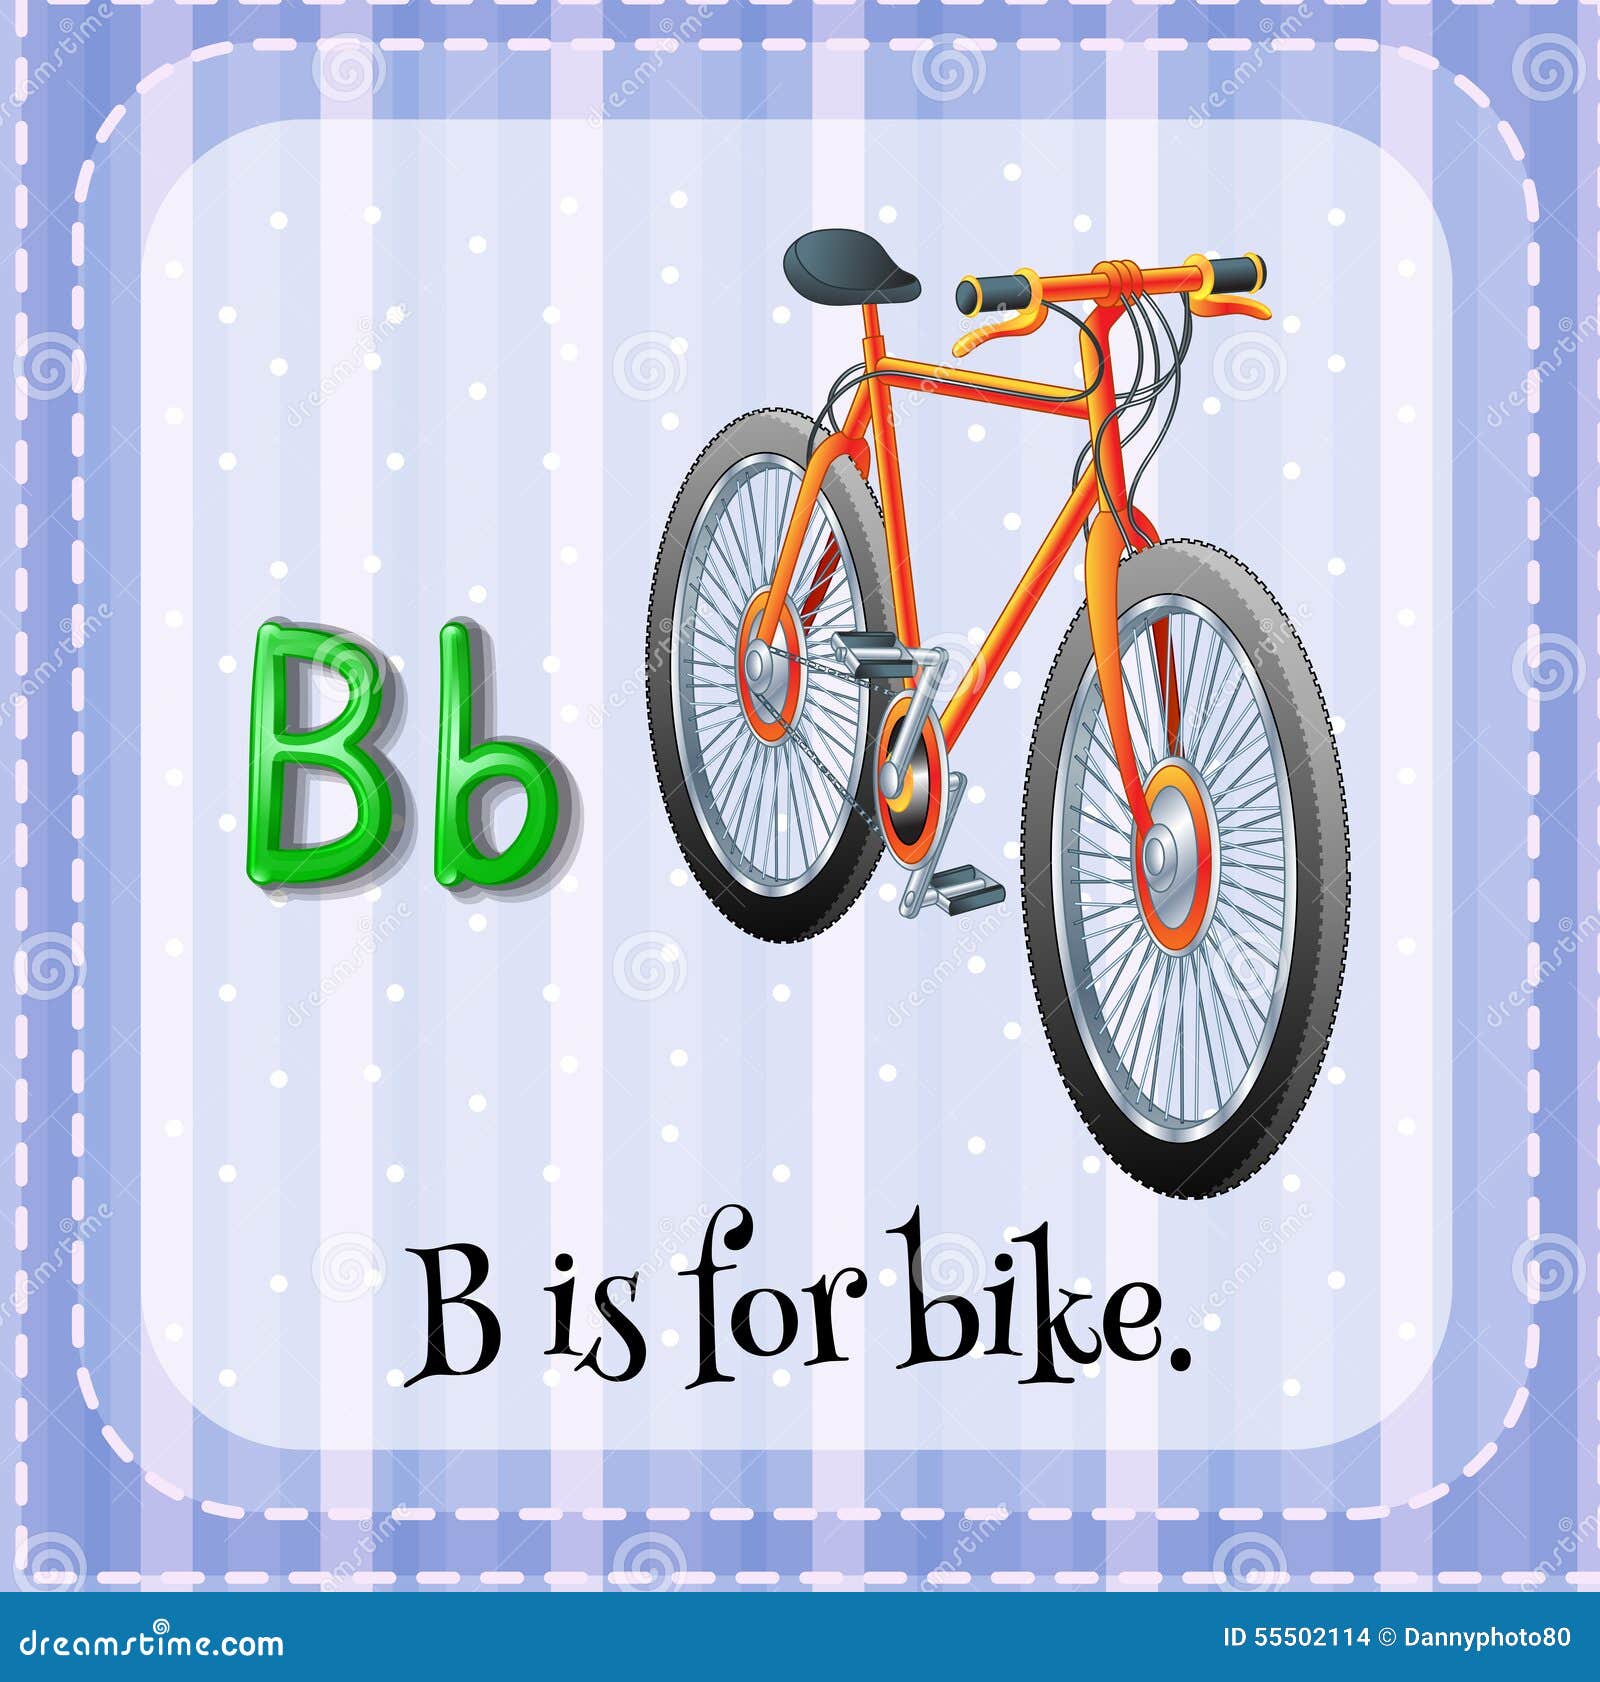 Байки на английском. Bike для детей английский. Bicycle карточка для детей. Велосипед по английскому. Bike картинка для детей на английском.